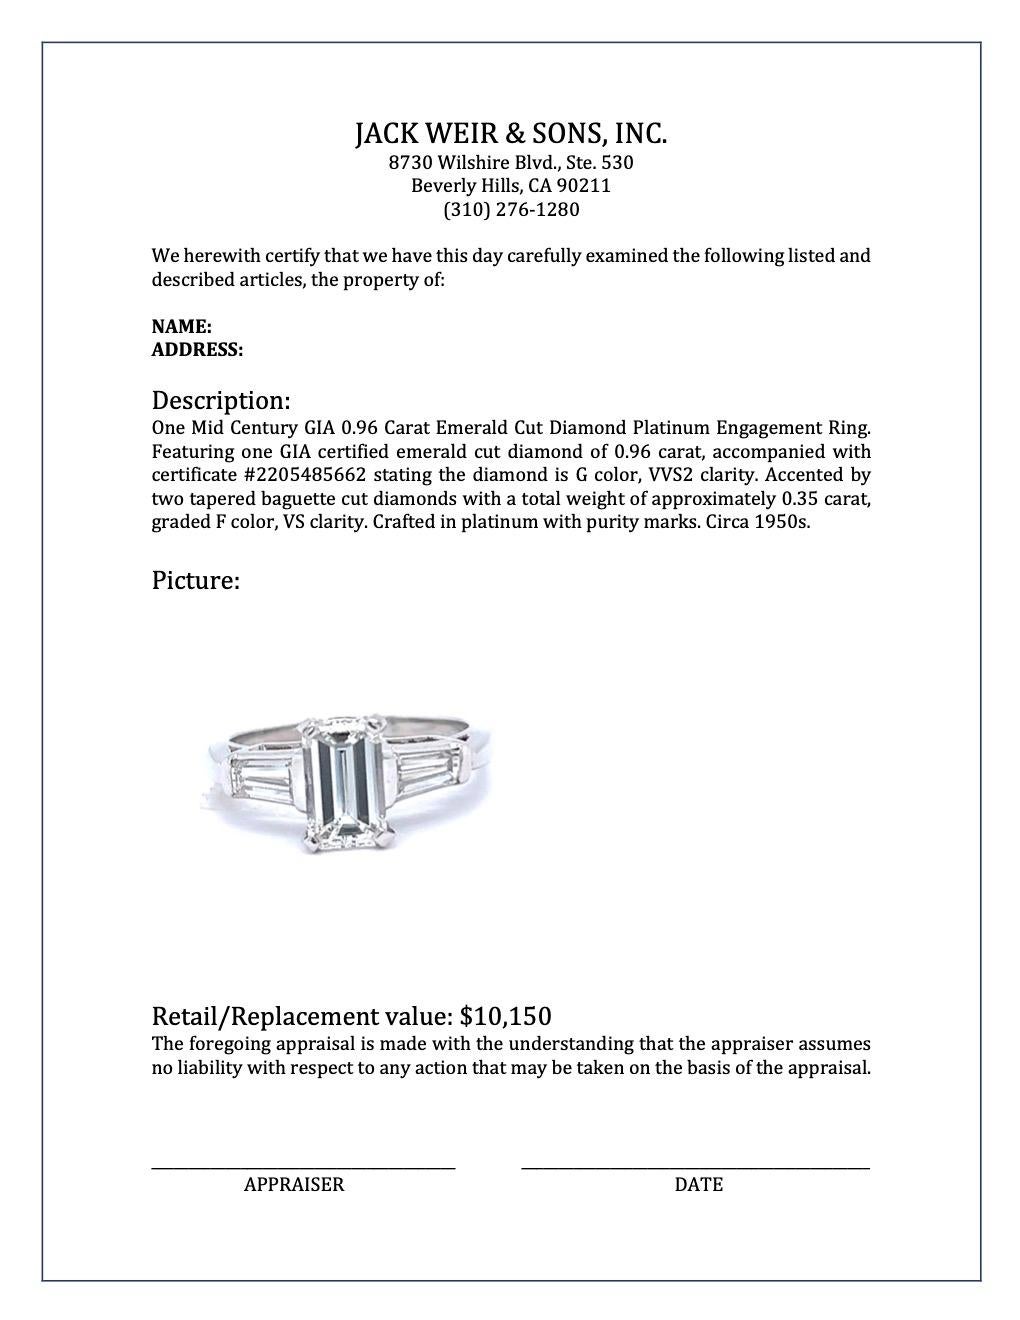 Mid-Century GIA 0.96 Carat Emerald Cut Diamond Platinum Engagement Ring 3